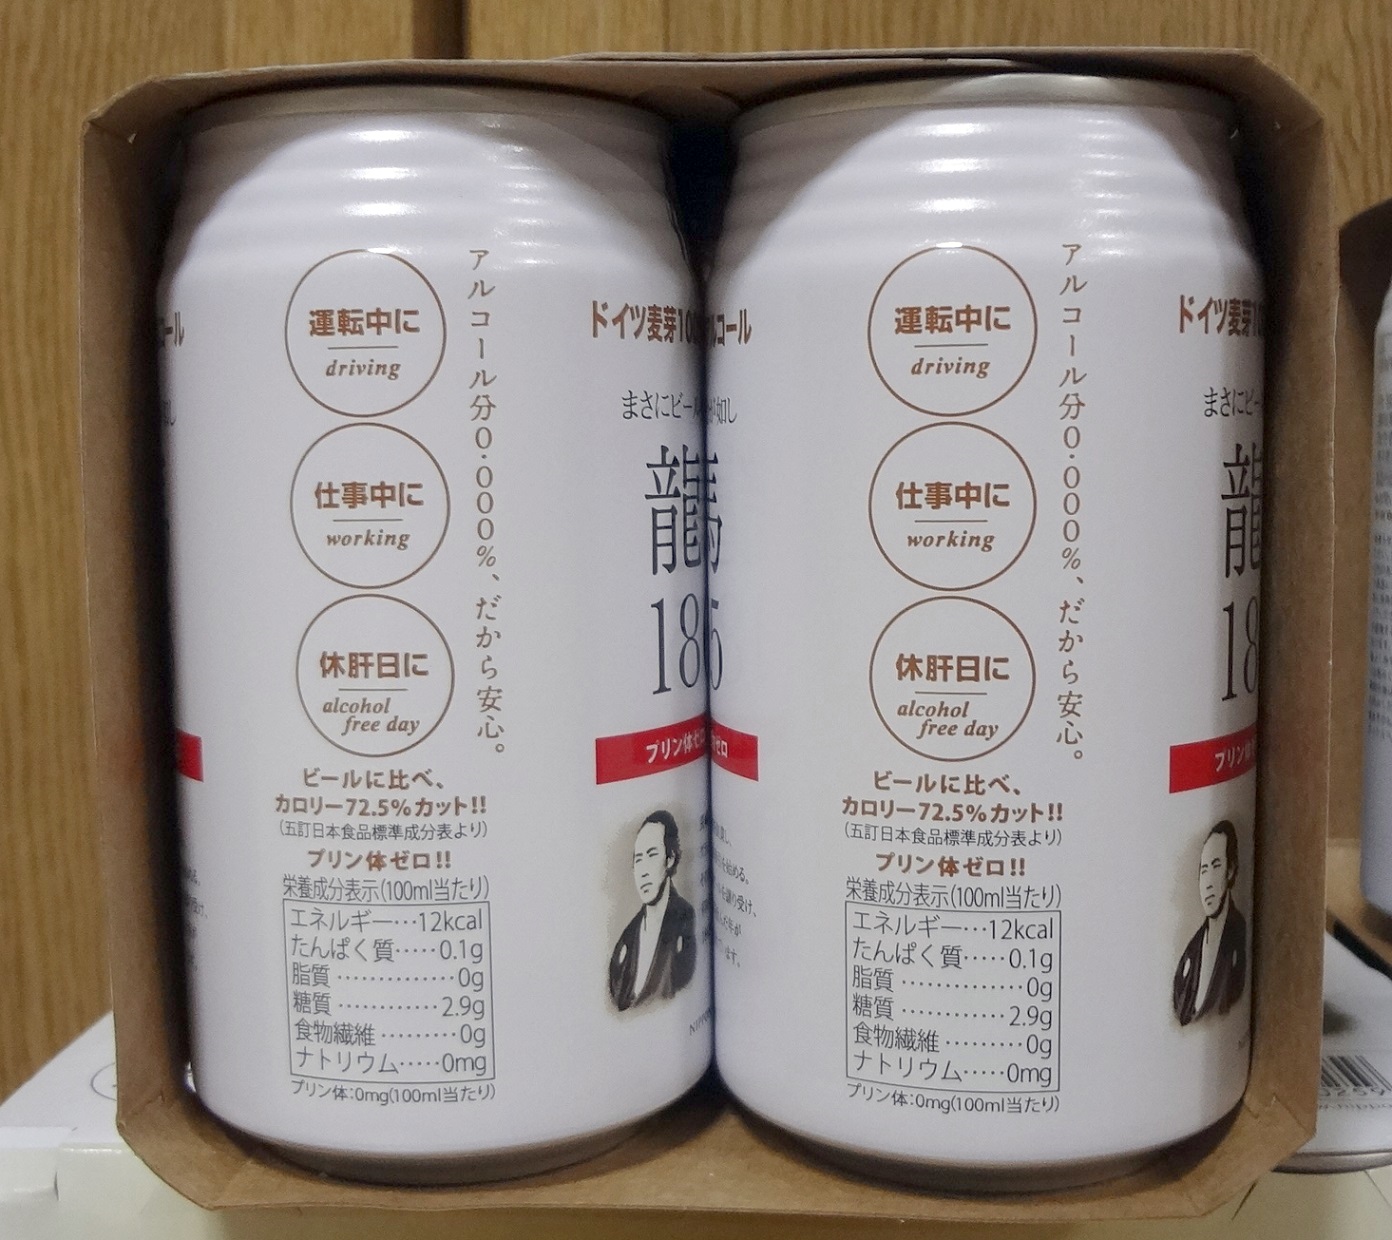 42円 【90%OFF!】 龍馬1865 ノンアルコールビール 350ml